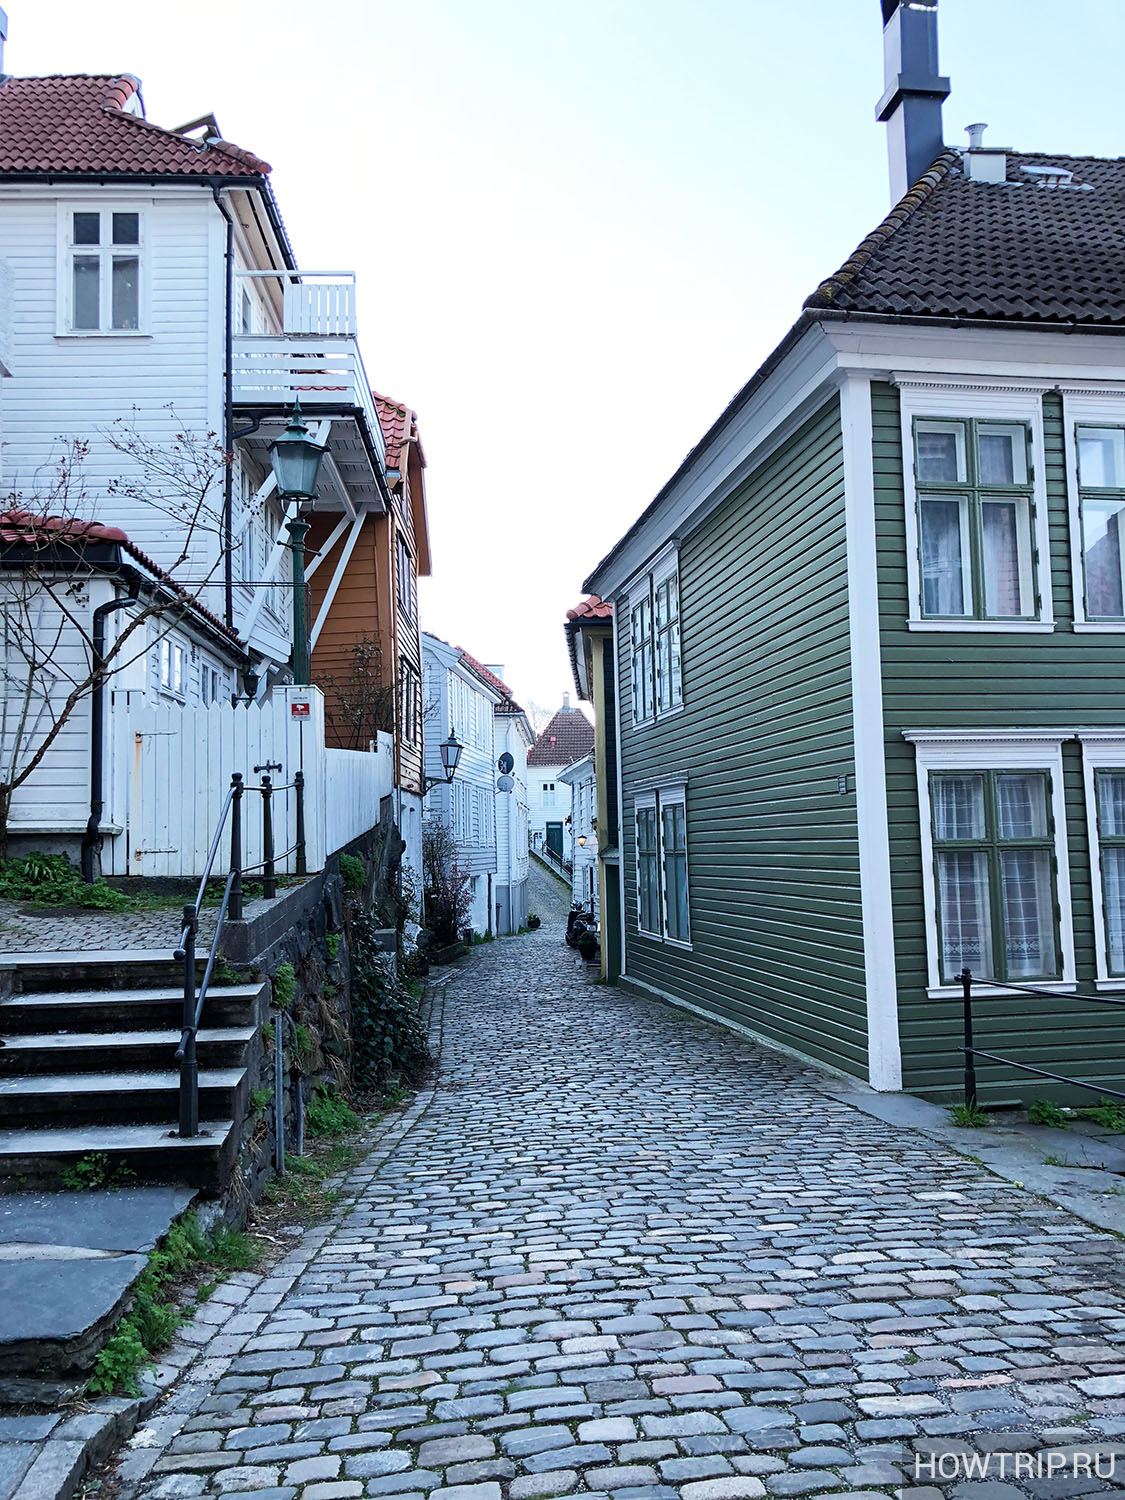 Улица Бергена, Норвегия (наша поездка)